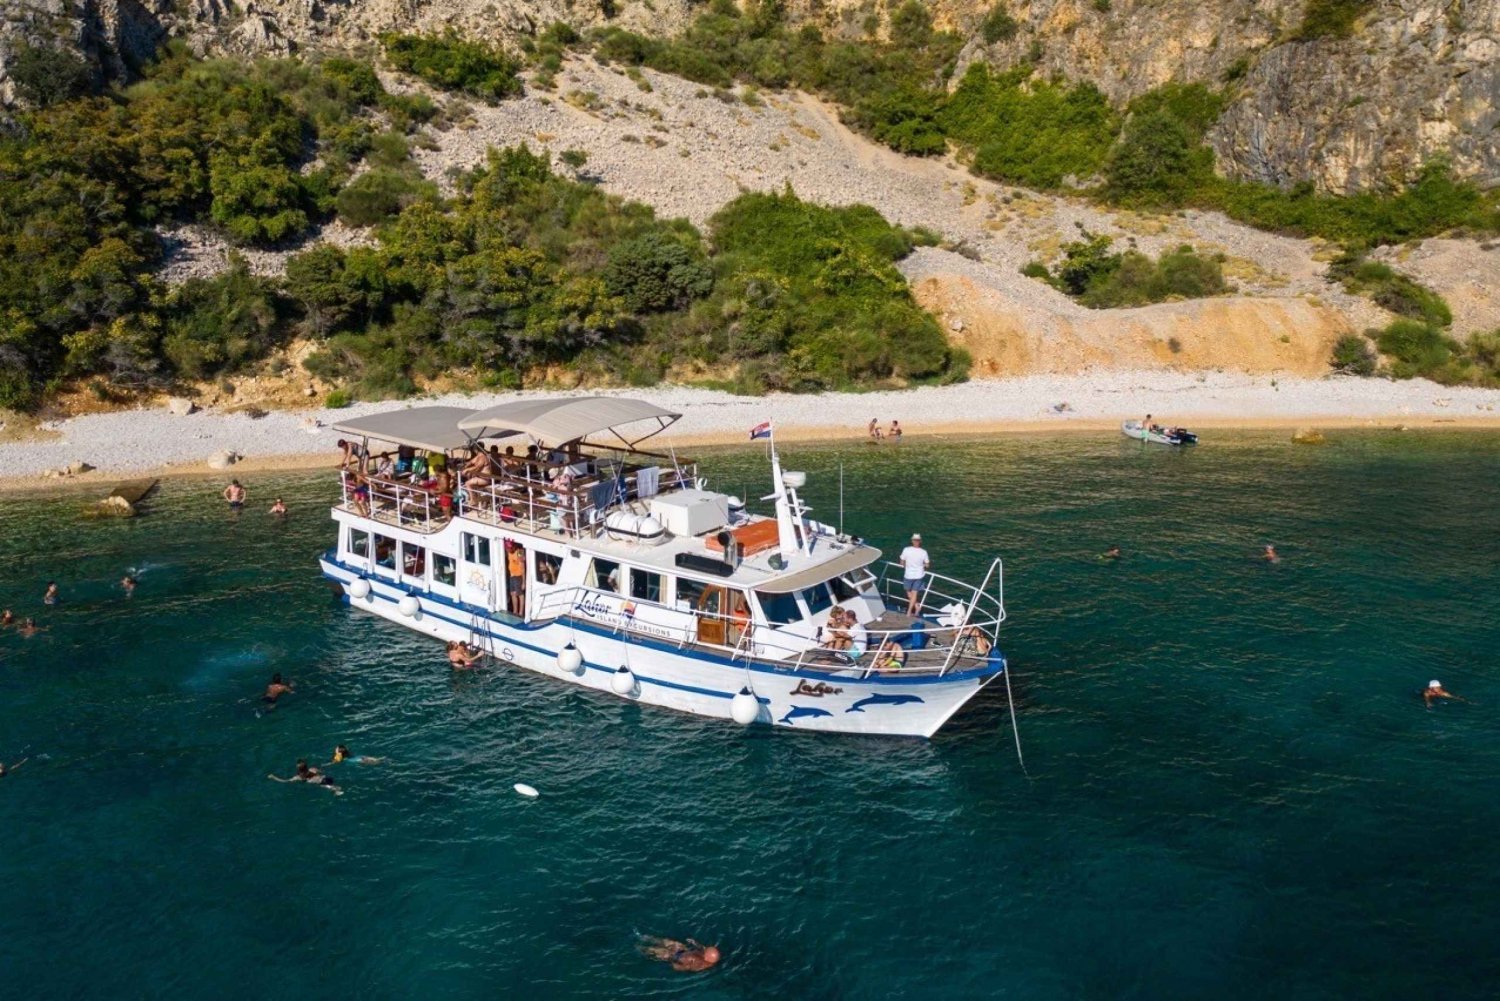 Punat: Bootsfahrt nach Grgur, Goli, Rab und zur Insel Krk mit Mittagessen